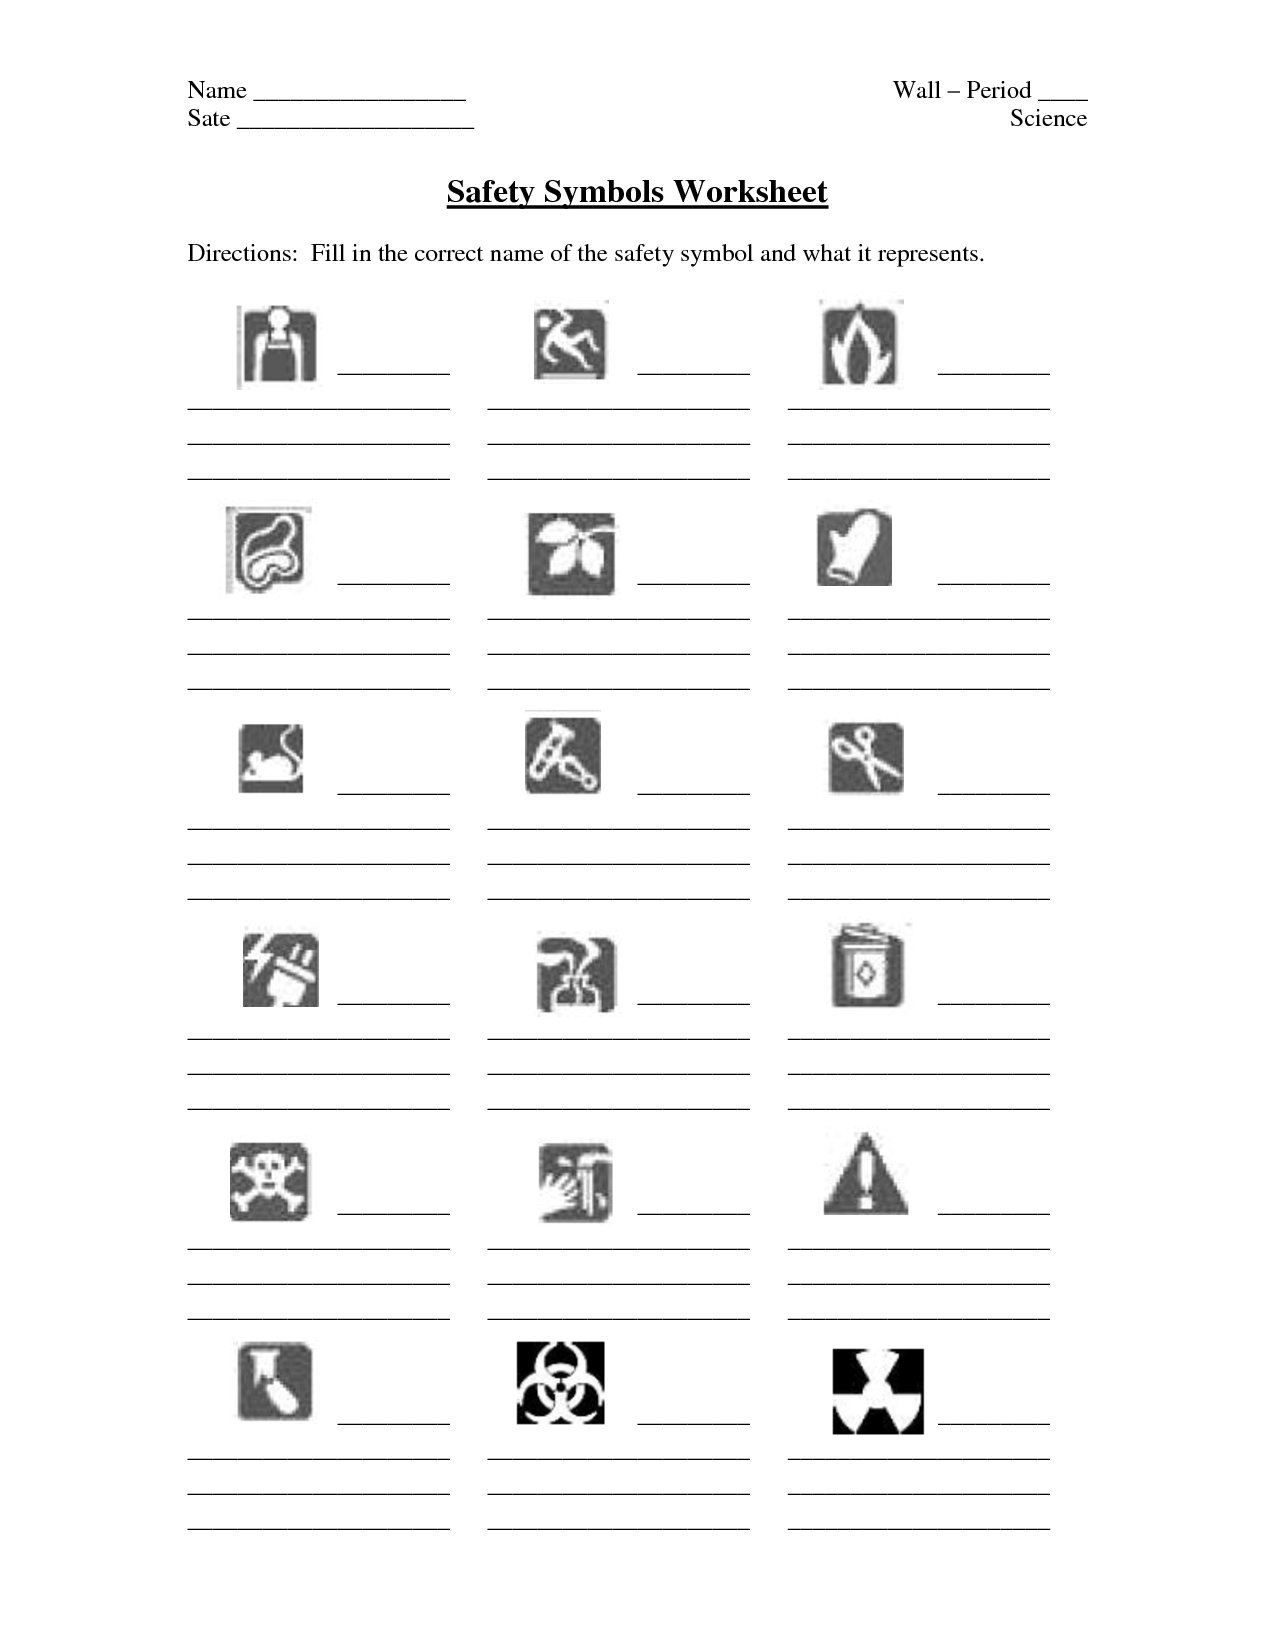 Safety Symbols Worksheet  Yooob Also Lab Safety Symbols Worksheet Answer Key